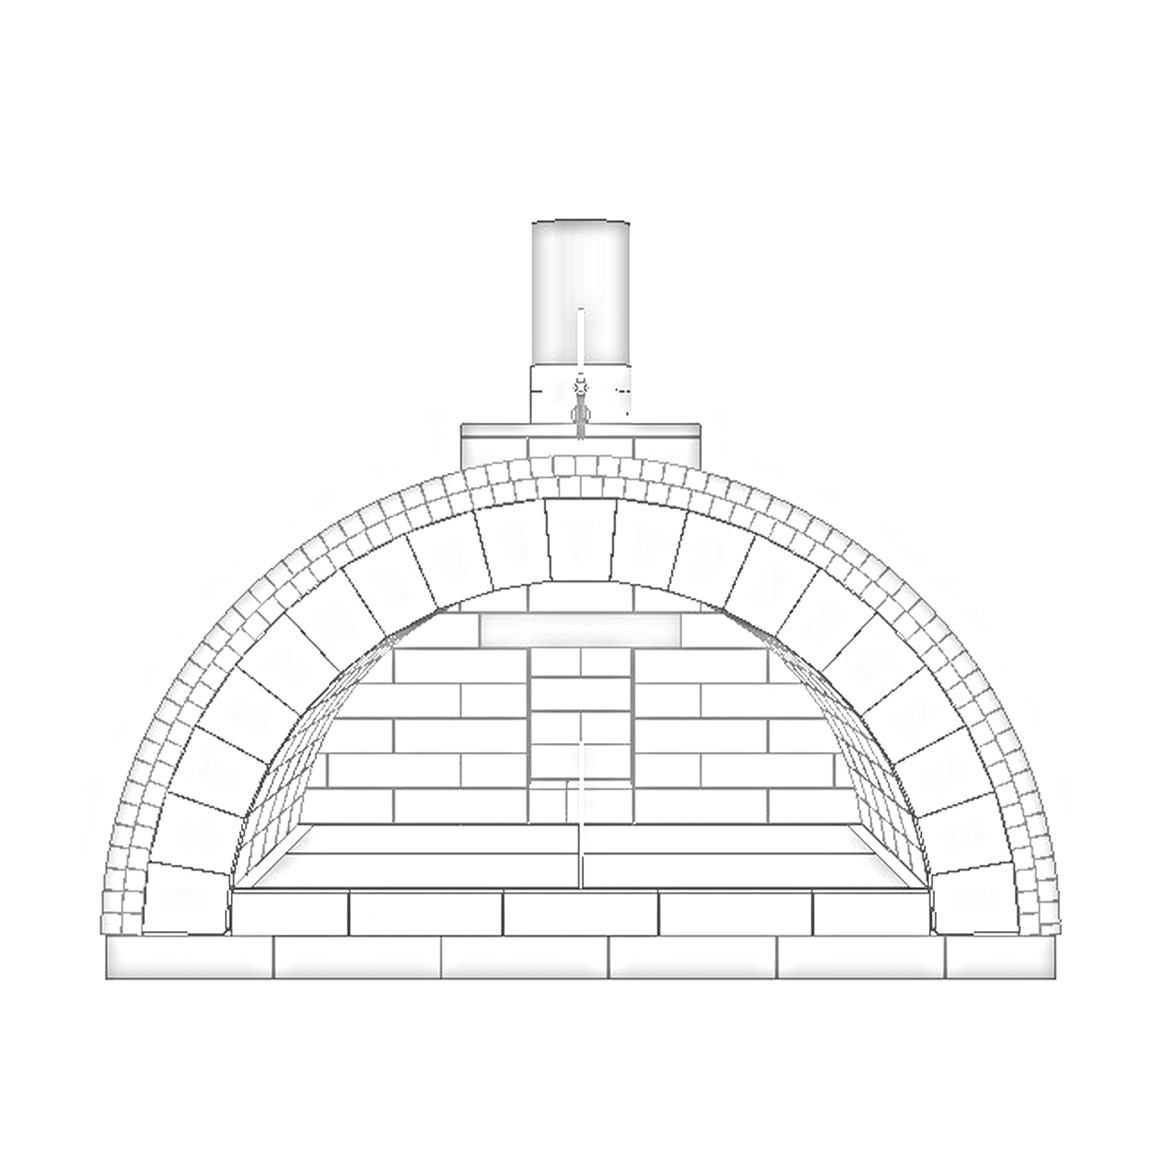 Bauplan für Steinbackofen / Pizzaofen Schuba®SBO-6, Backfläche 1050 x 1260mm, Gewölbekuppel